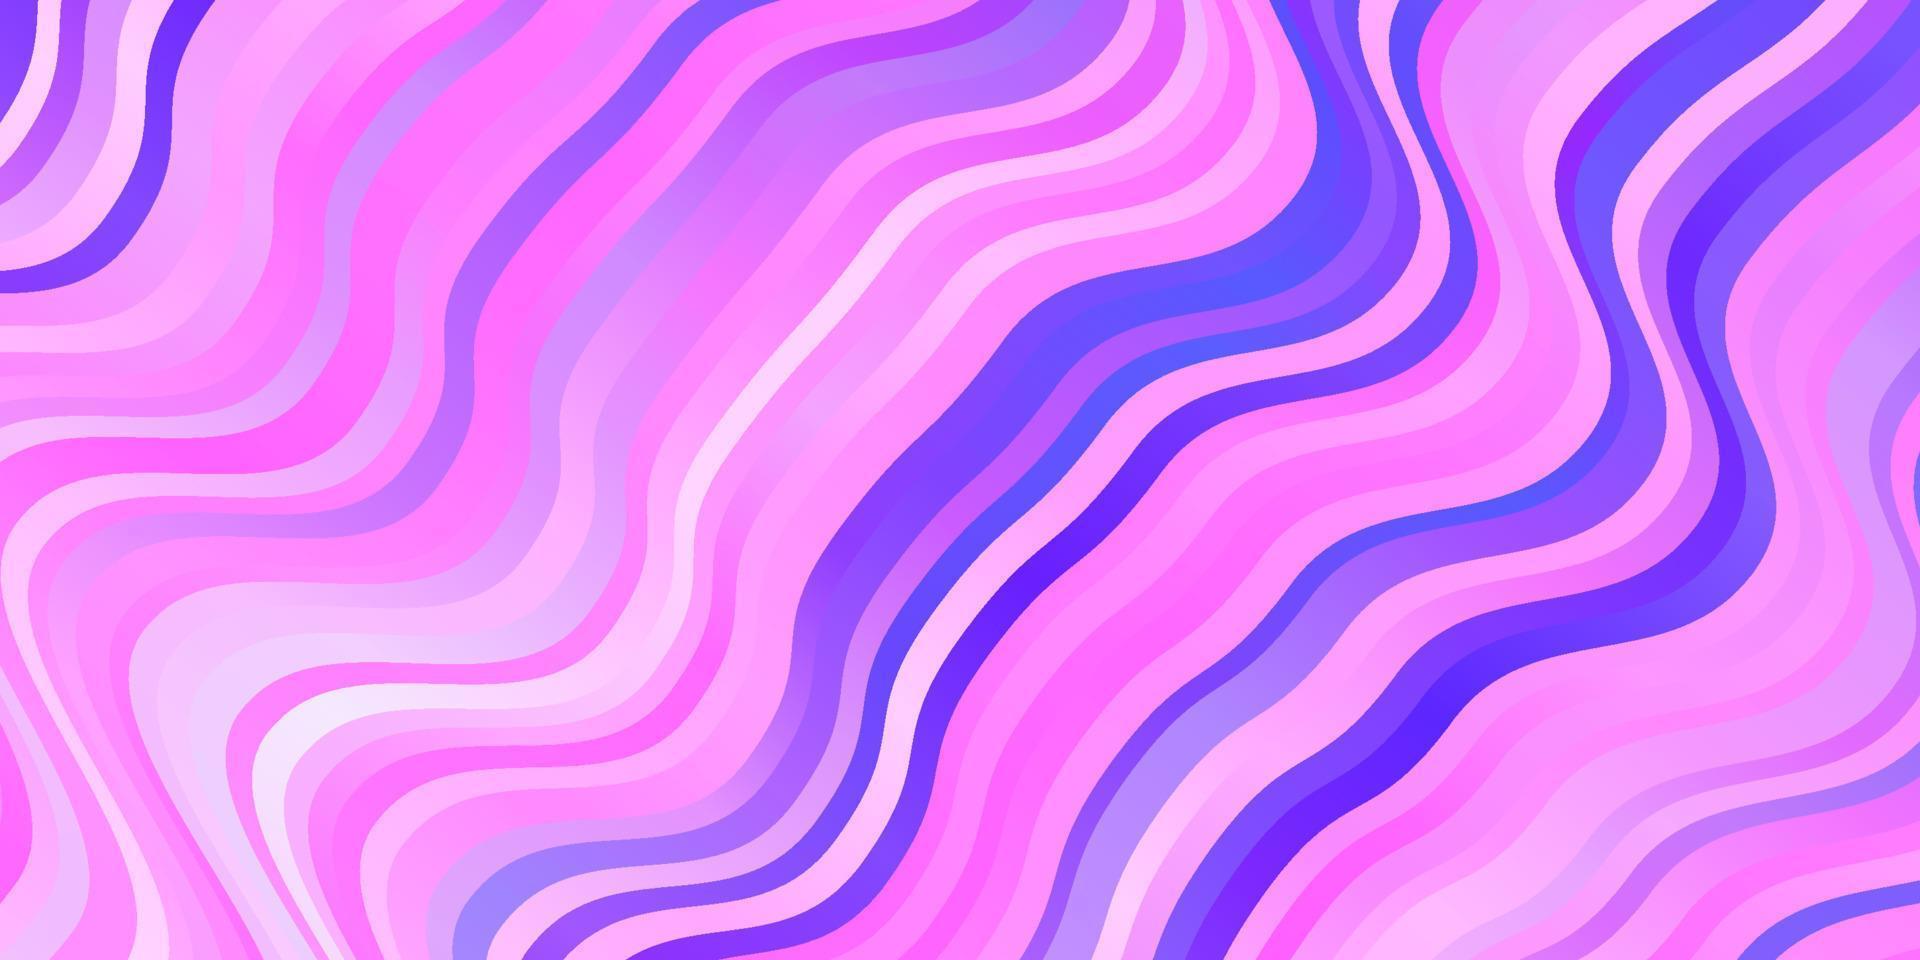 patrón de vector púrpura claro con líneas torcidas.